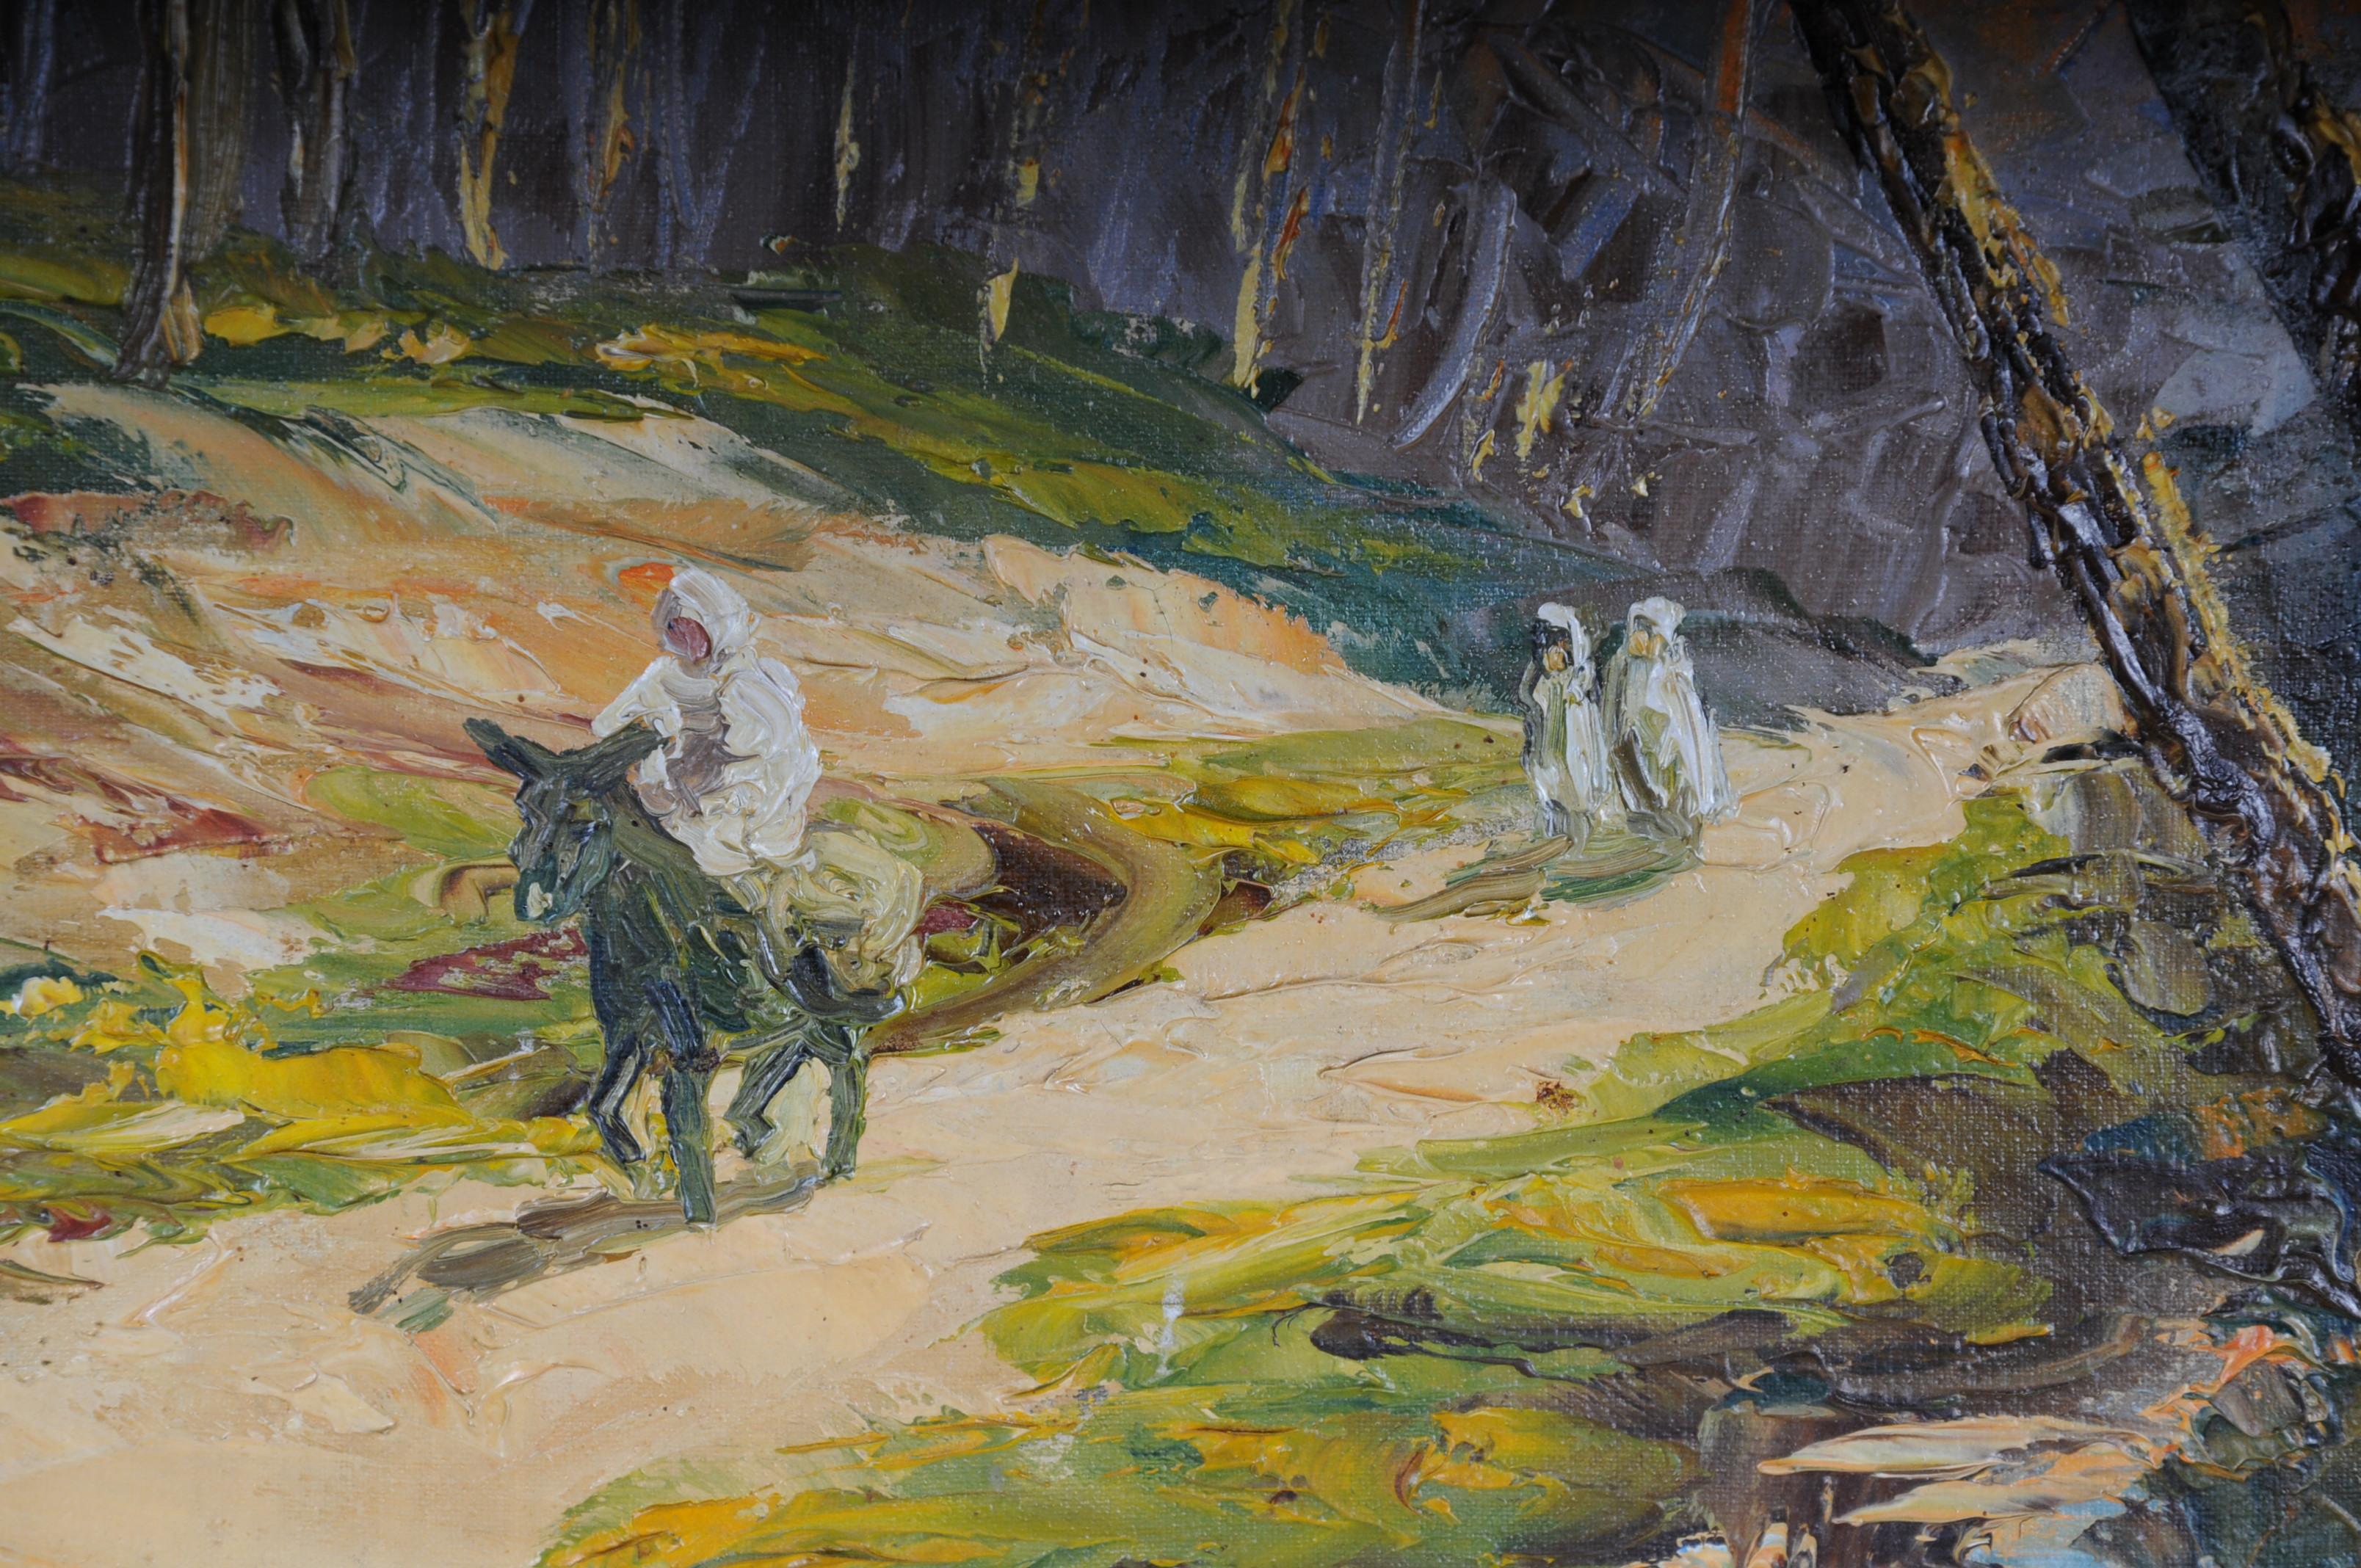 Orientalischer Maler Ölgemälde, signiert O. Birkholz

Öl auf Leinwand. Umrandeter Rahmen.
Blick auf eine Flusslandschaft unter Palmen.
Signiert O. Birkenholz.

(S-208).